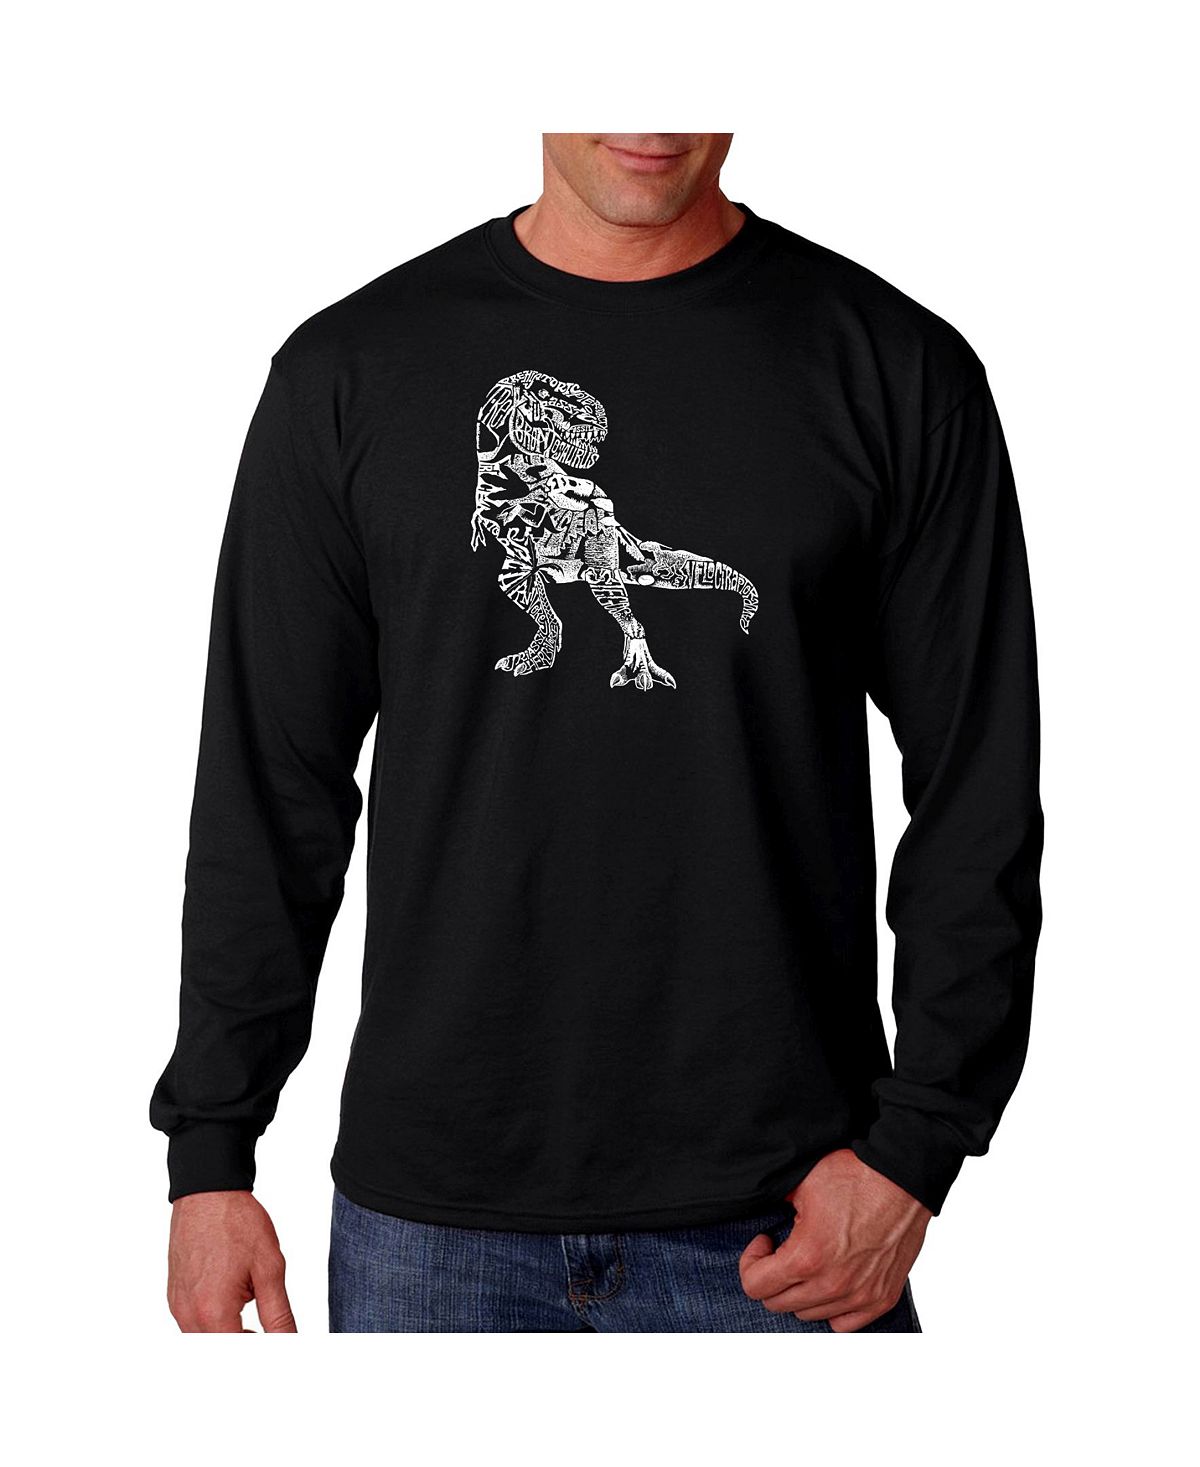 Мужская футболка с длинным рукавом word art - динозавр LA Pop Art, черный мужская футболка с длинным рукавом word art atom la pop art черный